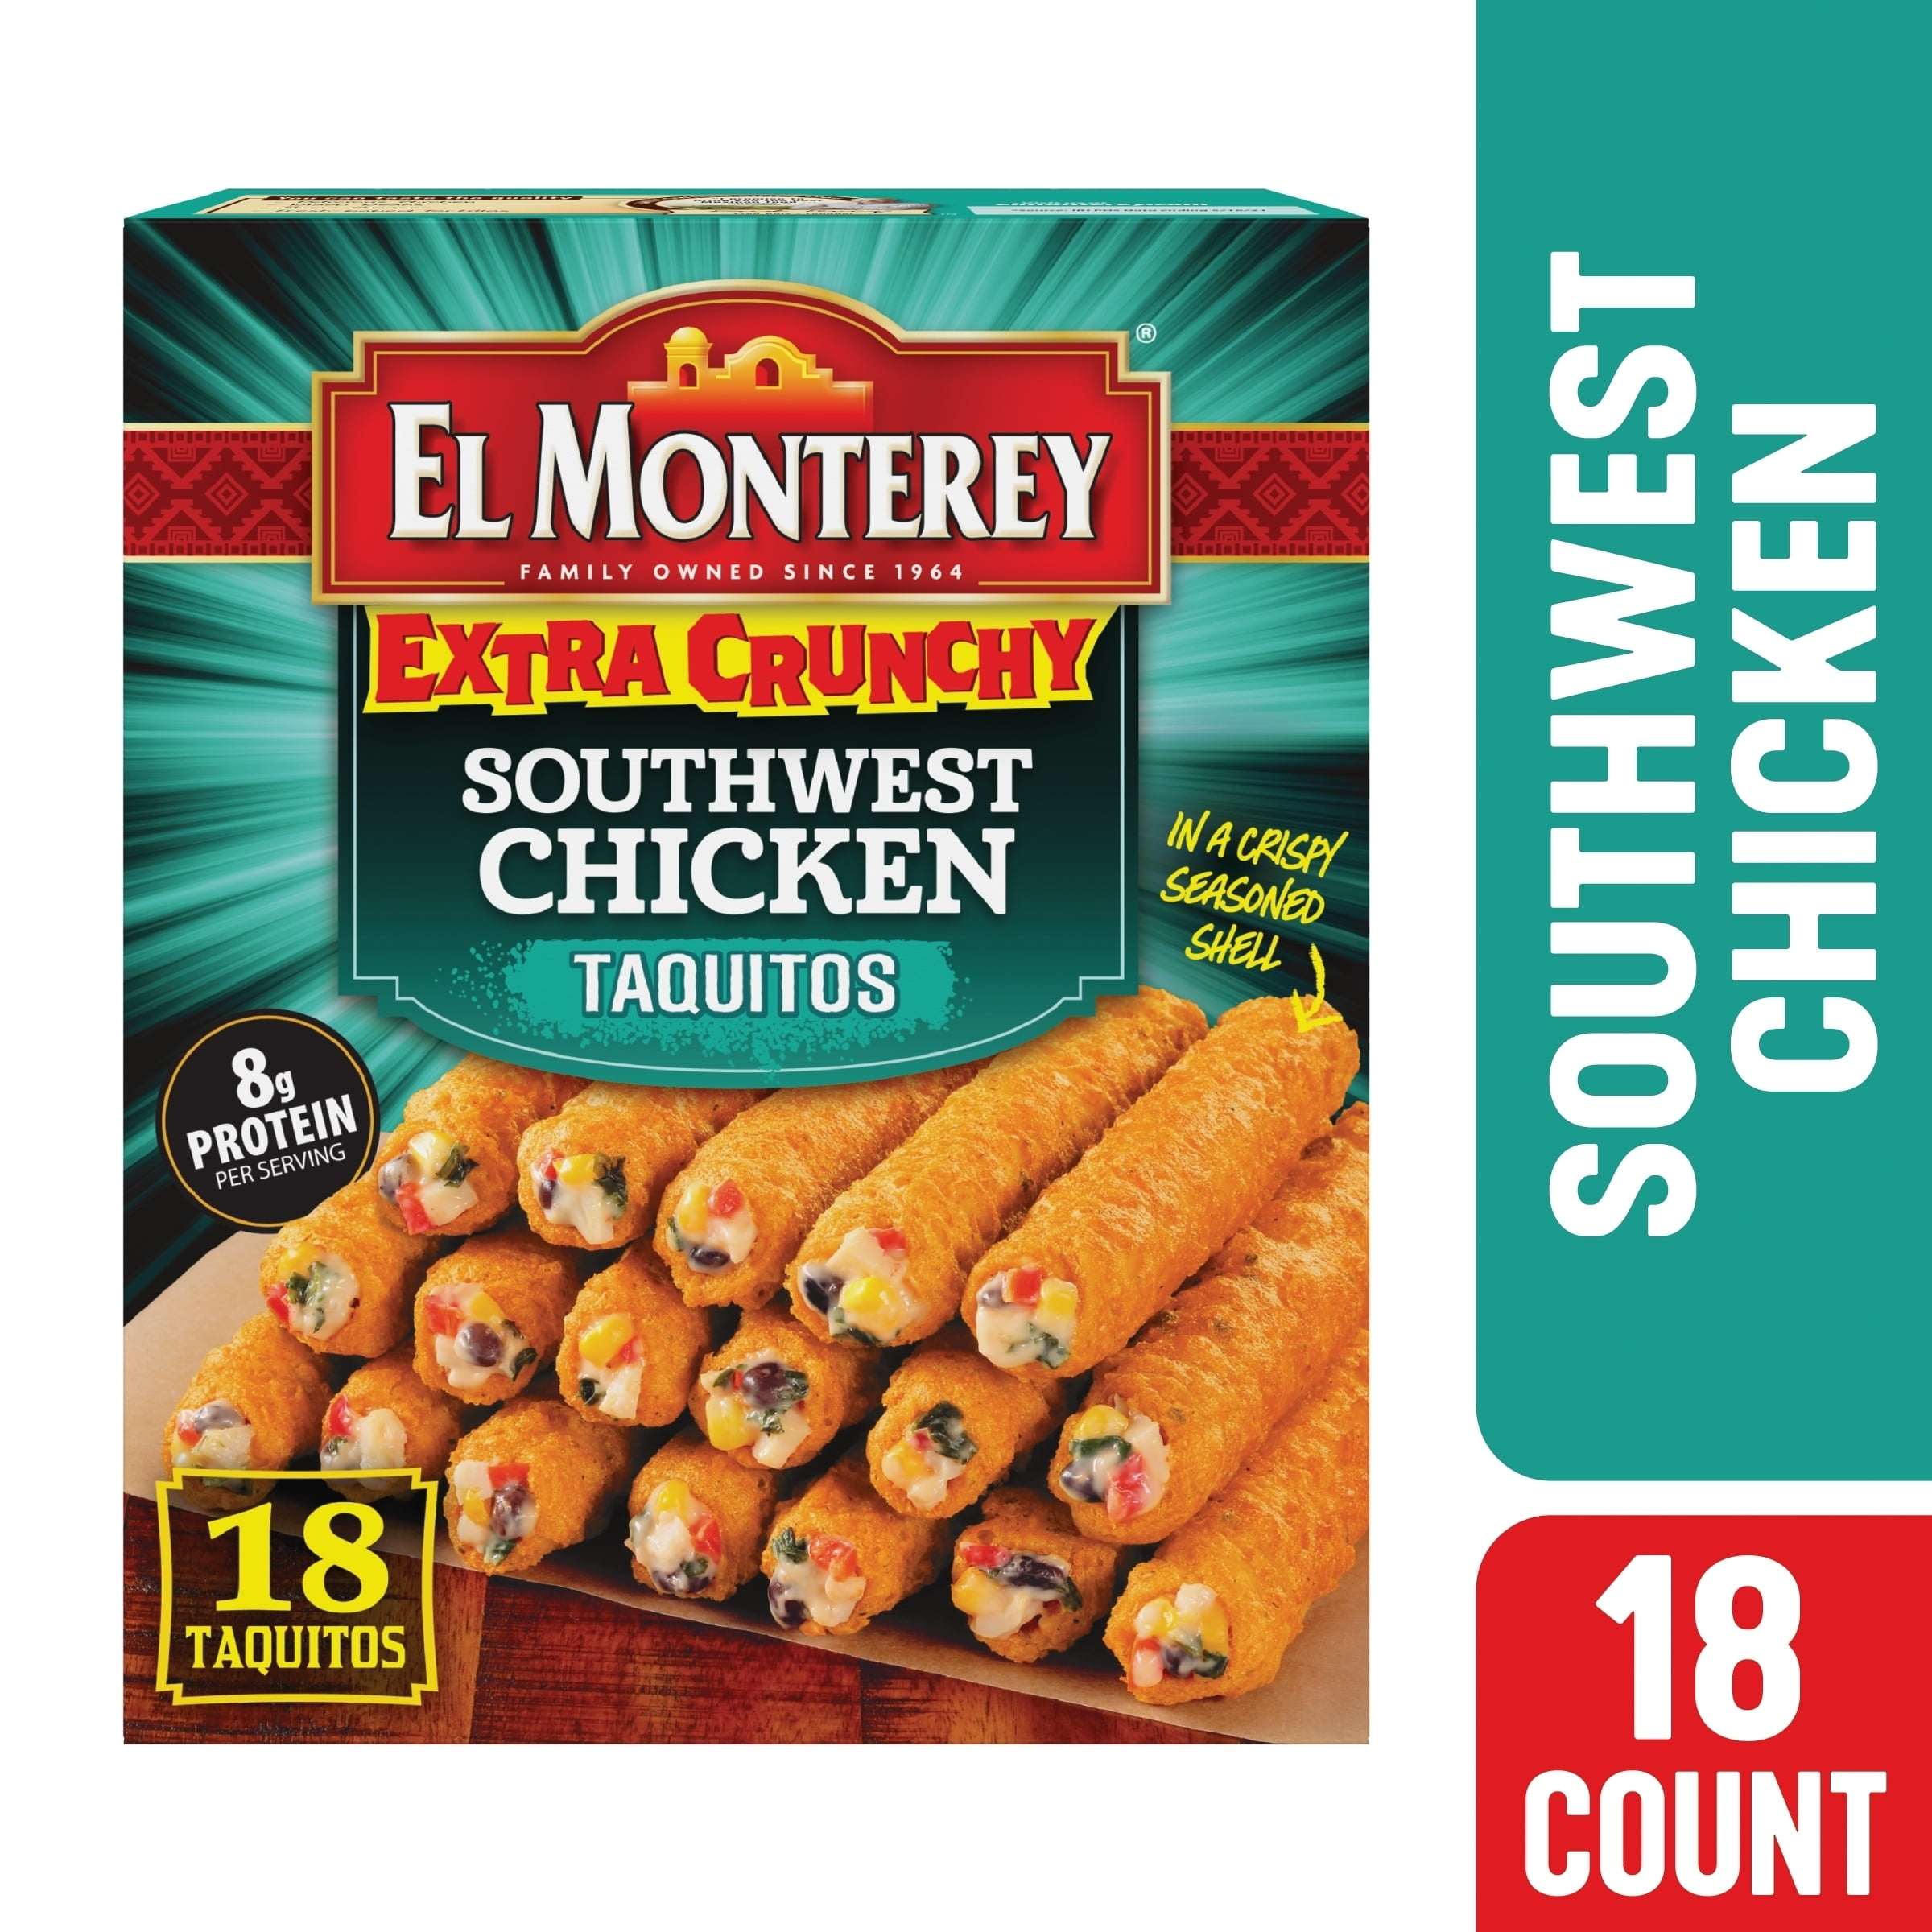 Southwest (Frozen) 20.7 Crunchy Oz, Extra Count 18 Monterey Taquitos, Chicken El